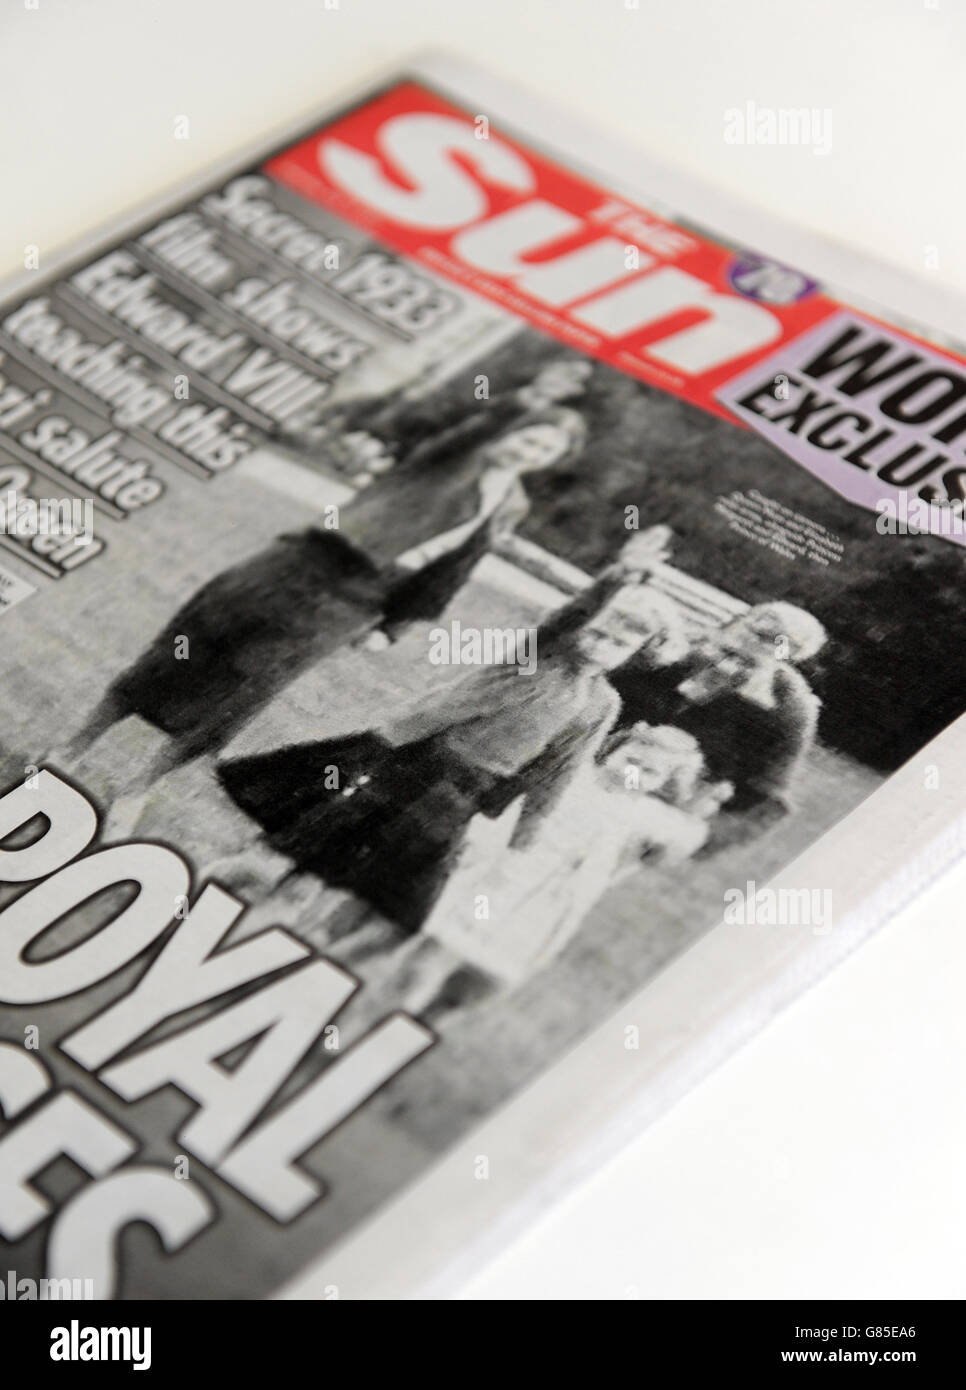 El periódico Sun publicó una portada con una foto de la Reina Isabel de Gran Bretaña como un niño dando un saludo nazi con la familia el 18 de julio de 2015. Foto de stock